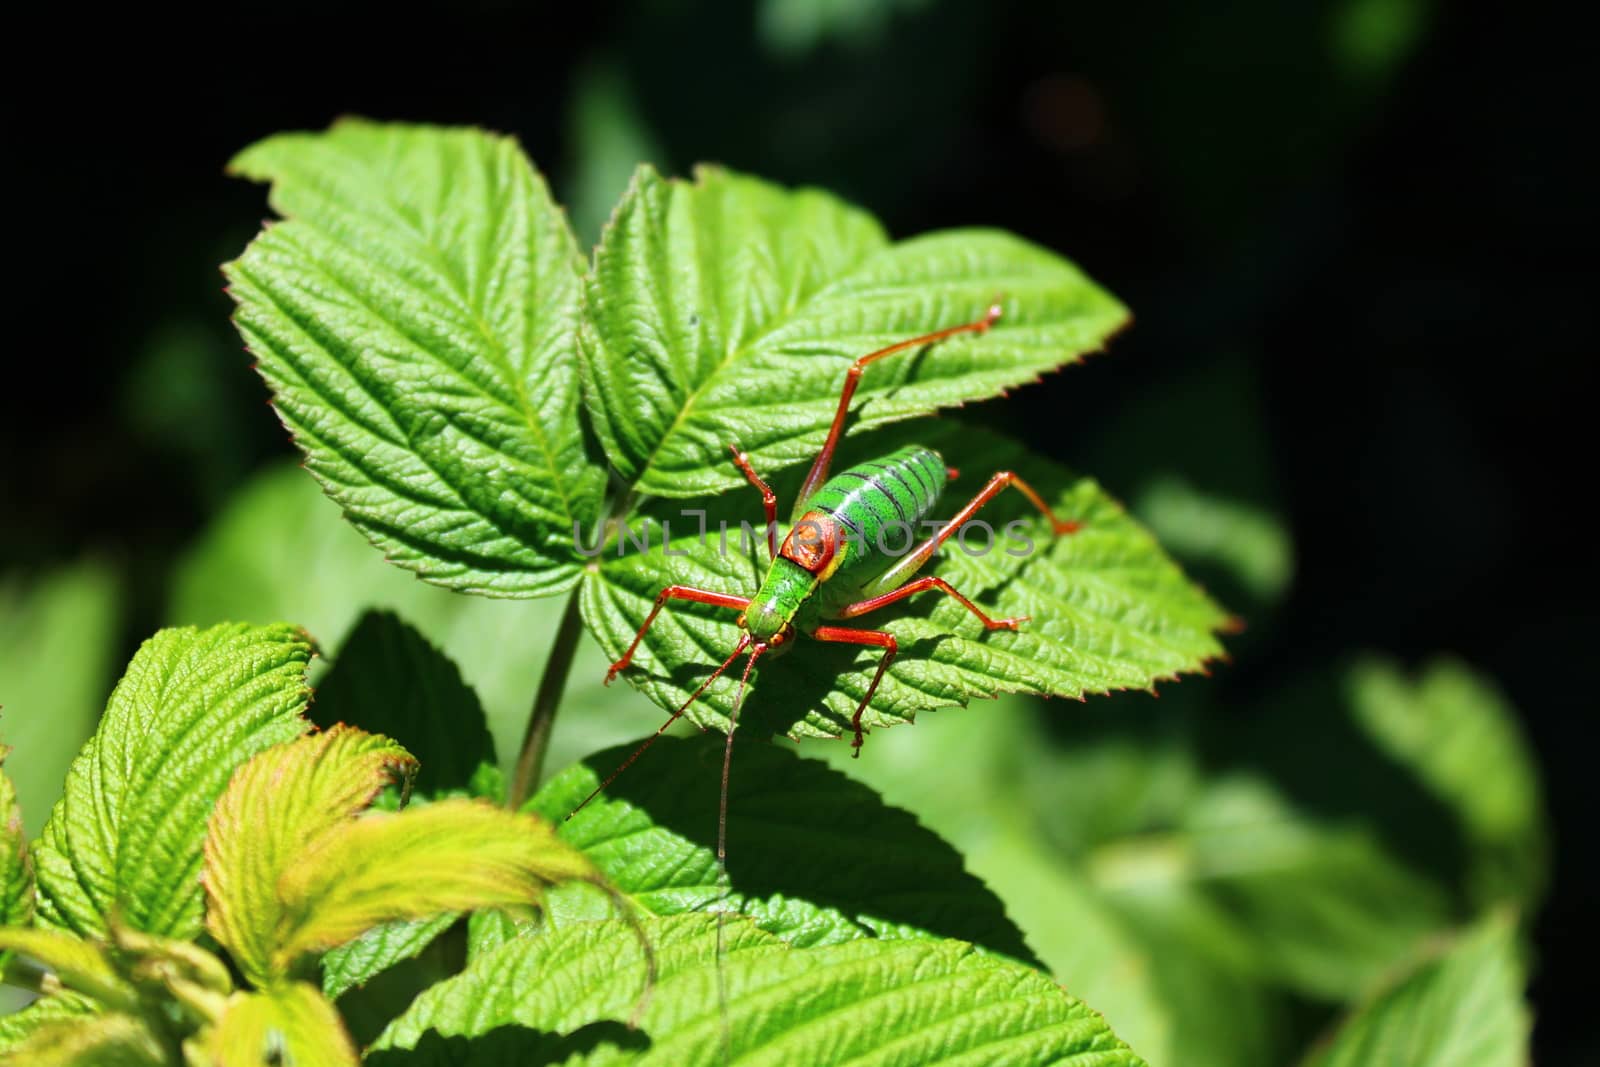 grasshopper on a raspberry leaf by martina_unbehauen